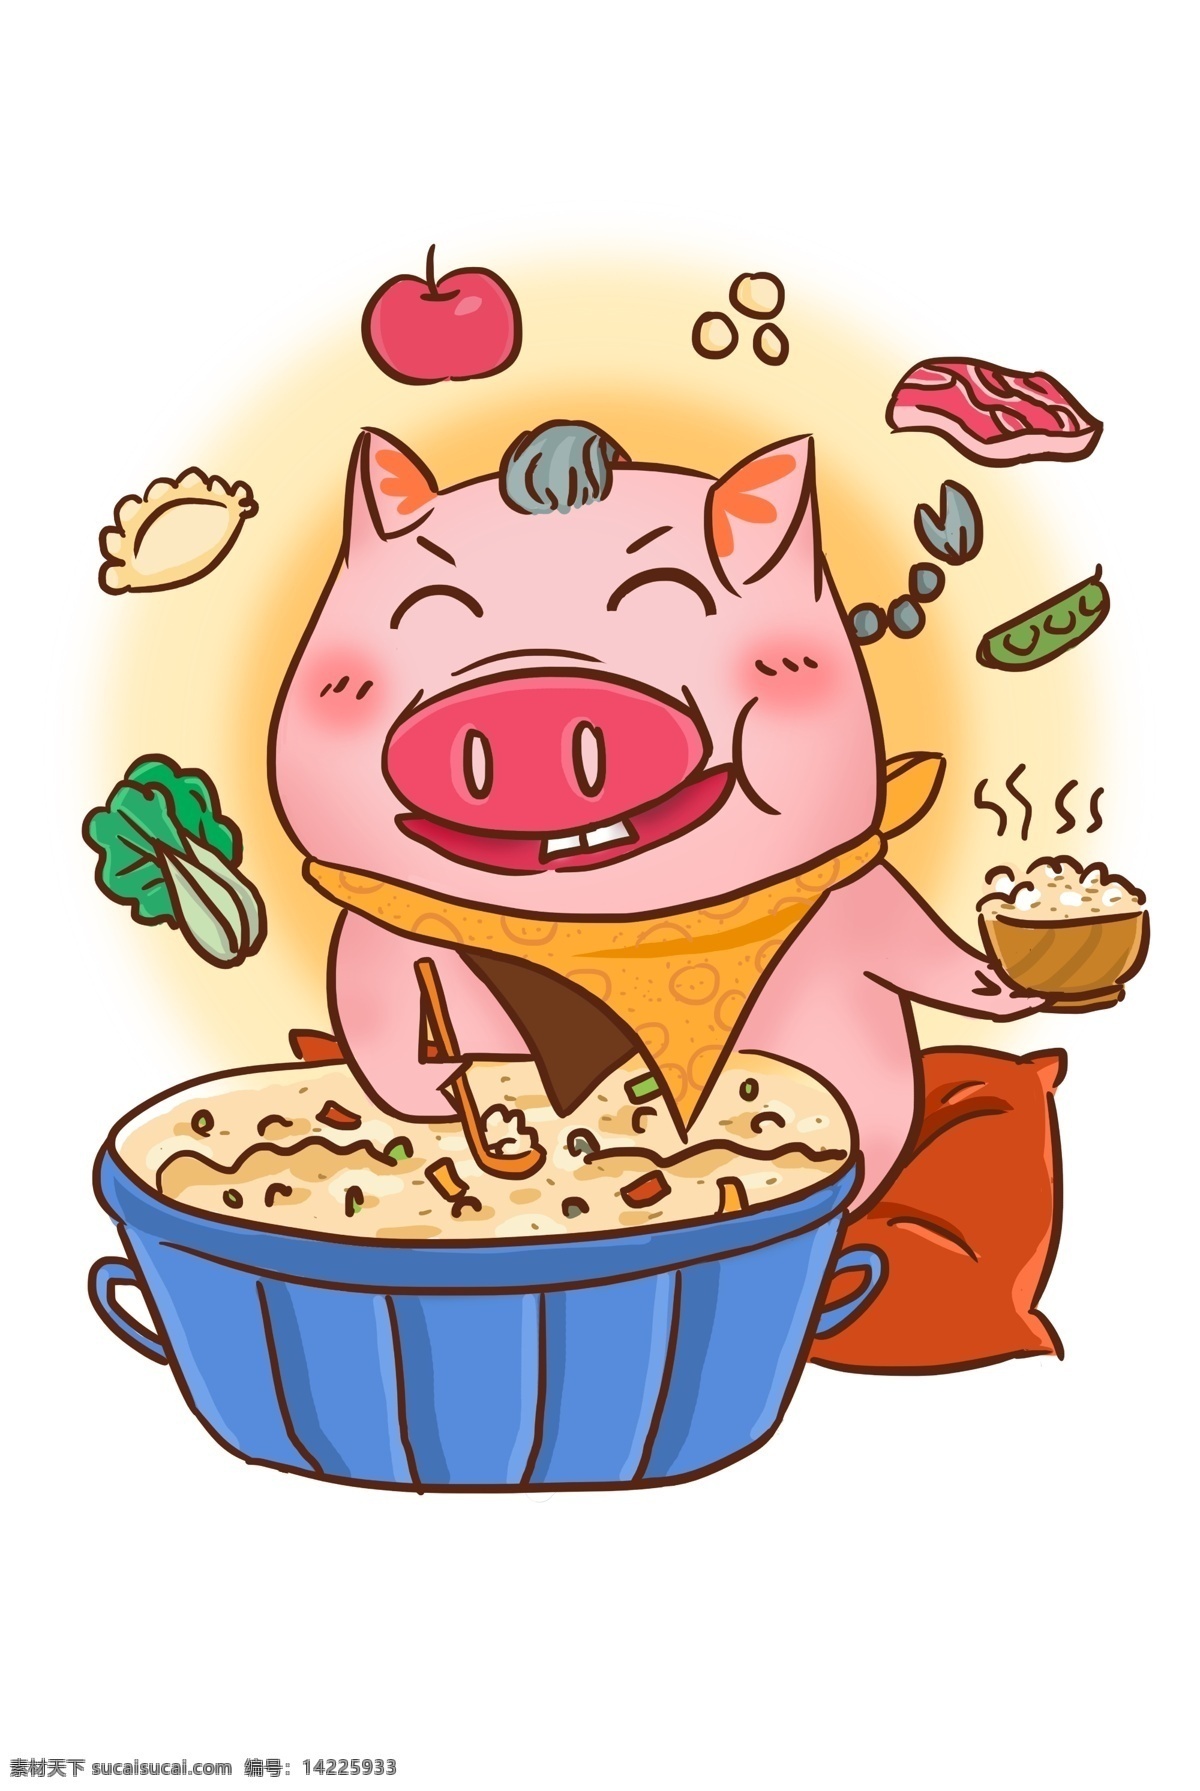 2019 猪年 饱食 有余 食物 米饭 猪 快乐 分享 三十晚上 年夜饭 吃着不尽